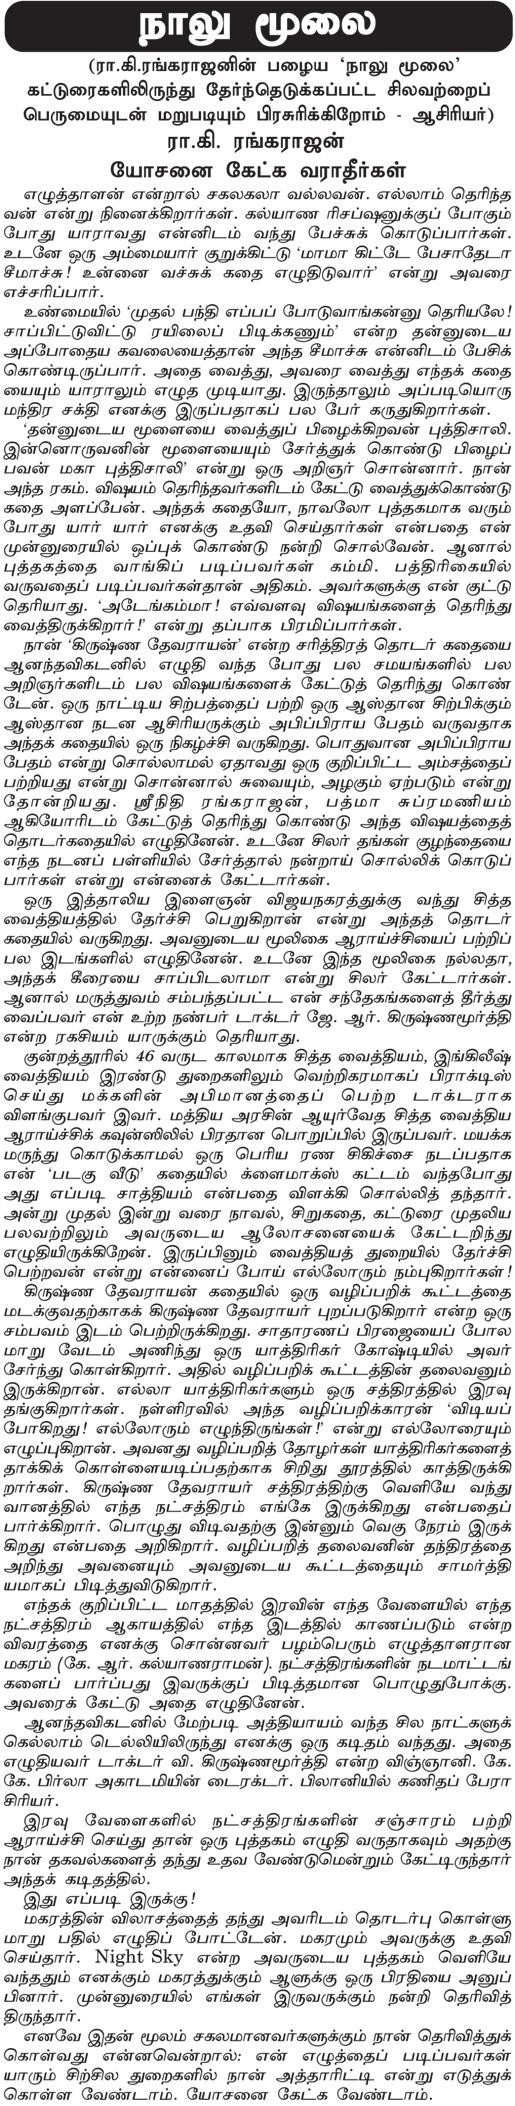 Page 4 MAMBALAM TIMES September 7-13, 2013 Sreyas Gallery to conduct exhibition of Vinayagar idols Sreyas Art Gallery (A2, 8, Bazullah Road, T.